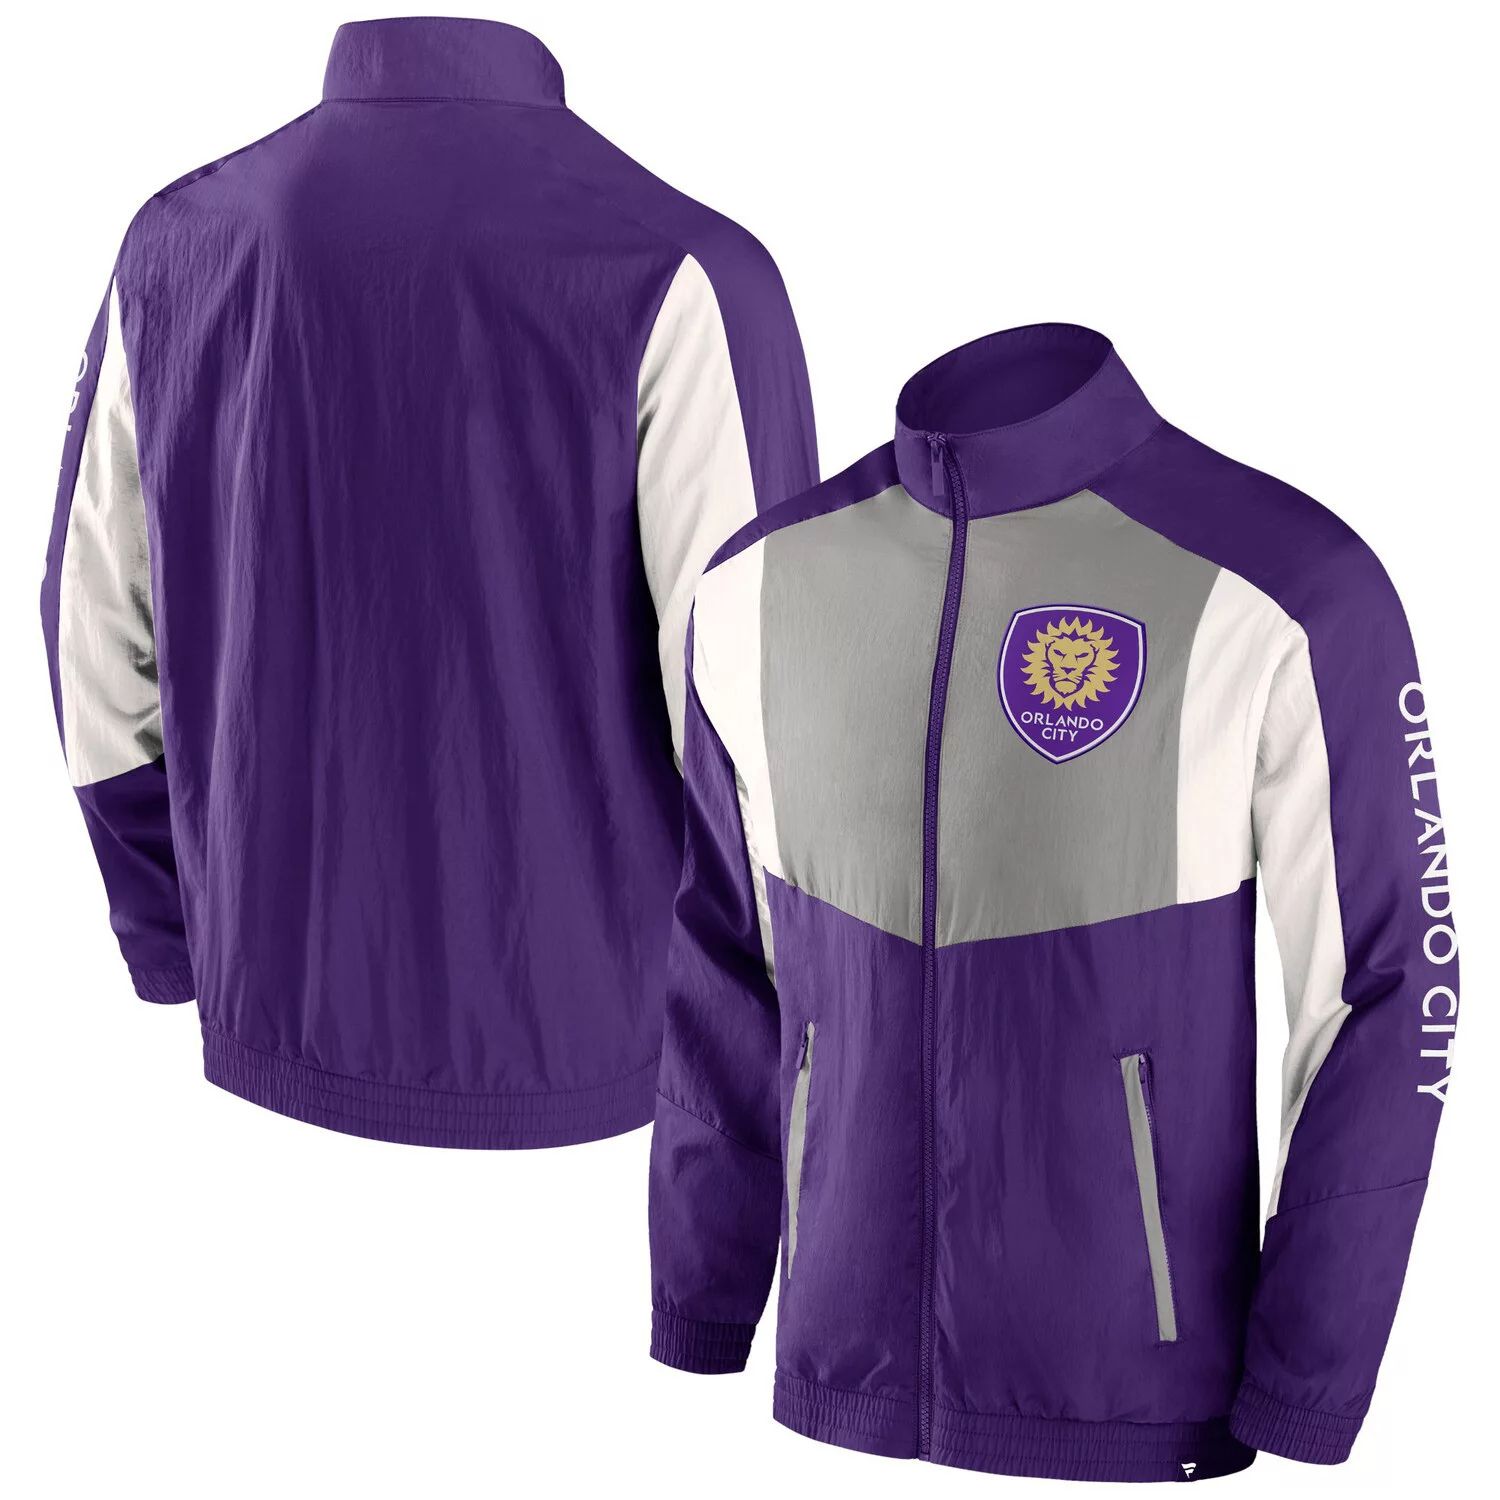 Мужская спортивная куртка с молнией во всю длину и реглан фиолетового цвета с логотипом Orlando City SC Net Goal Fanatics